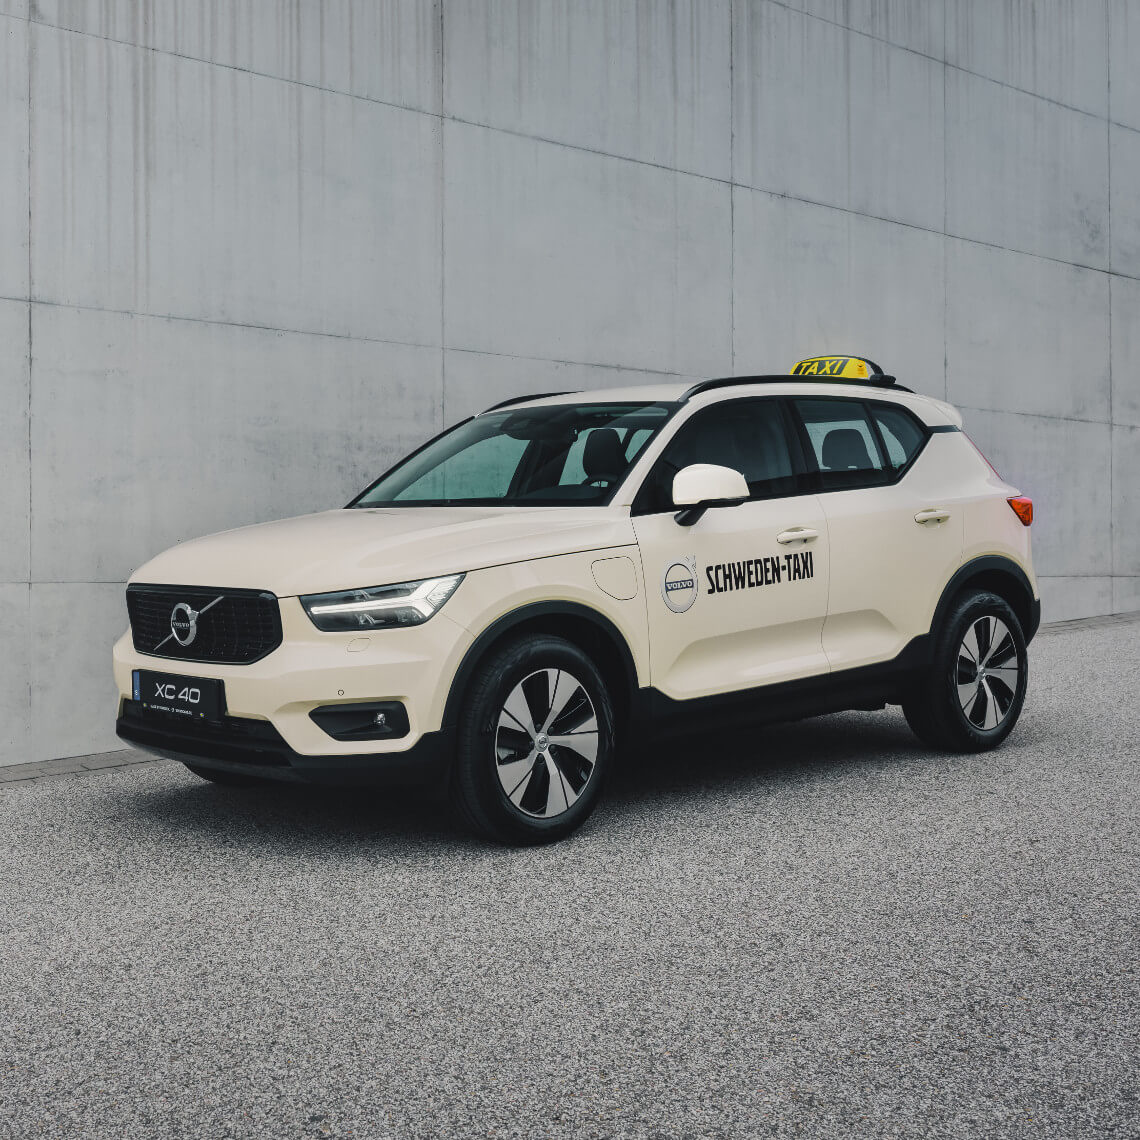 Volvo Schweden-Taxi XC40 steht vor einer grauen Steinwand - Frontseitschuss